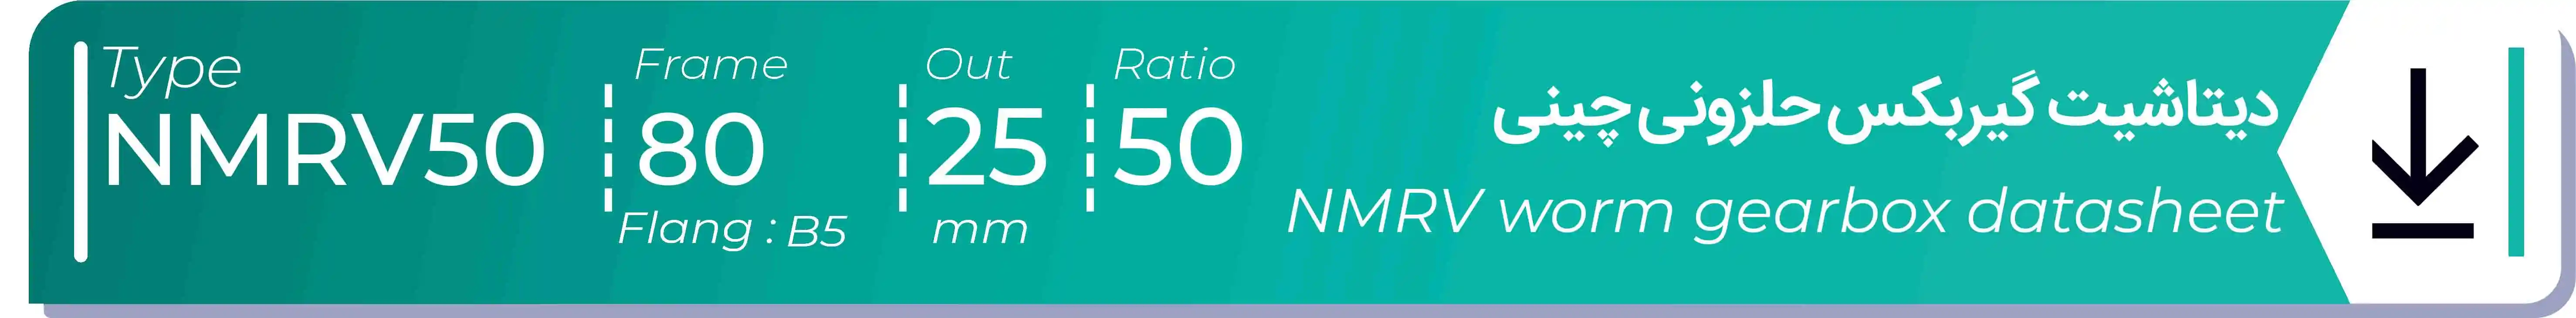  دیتاشیت و مشخصات فنی گیربکس حلزونی چینی   NMRV50  -  با خروجی 25- میلی متر و نسبت50 و فریم 80